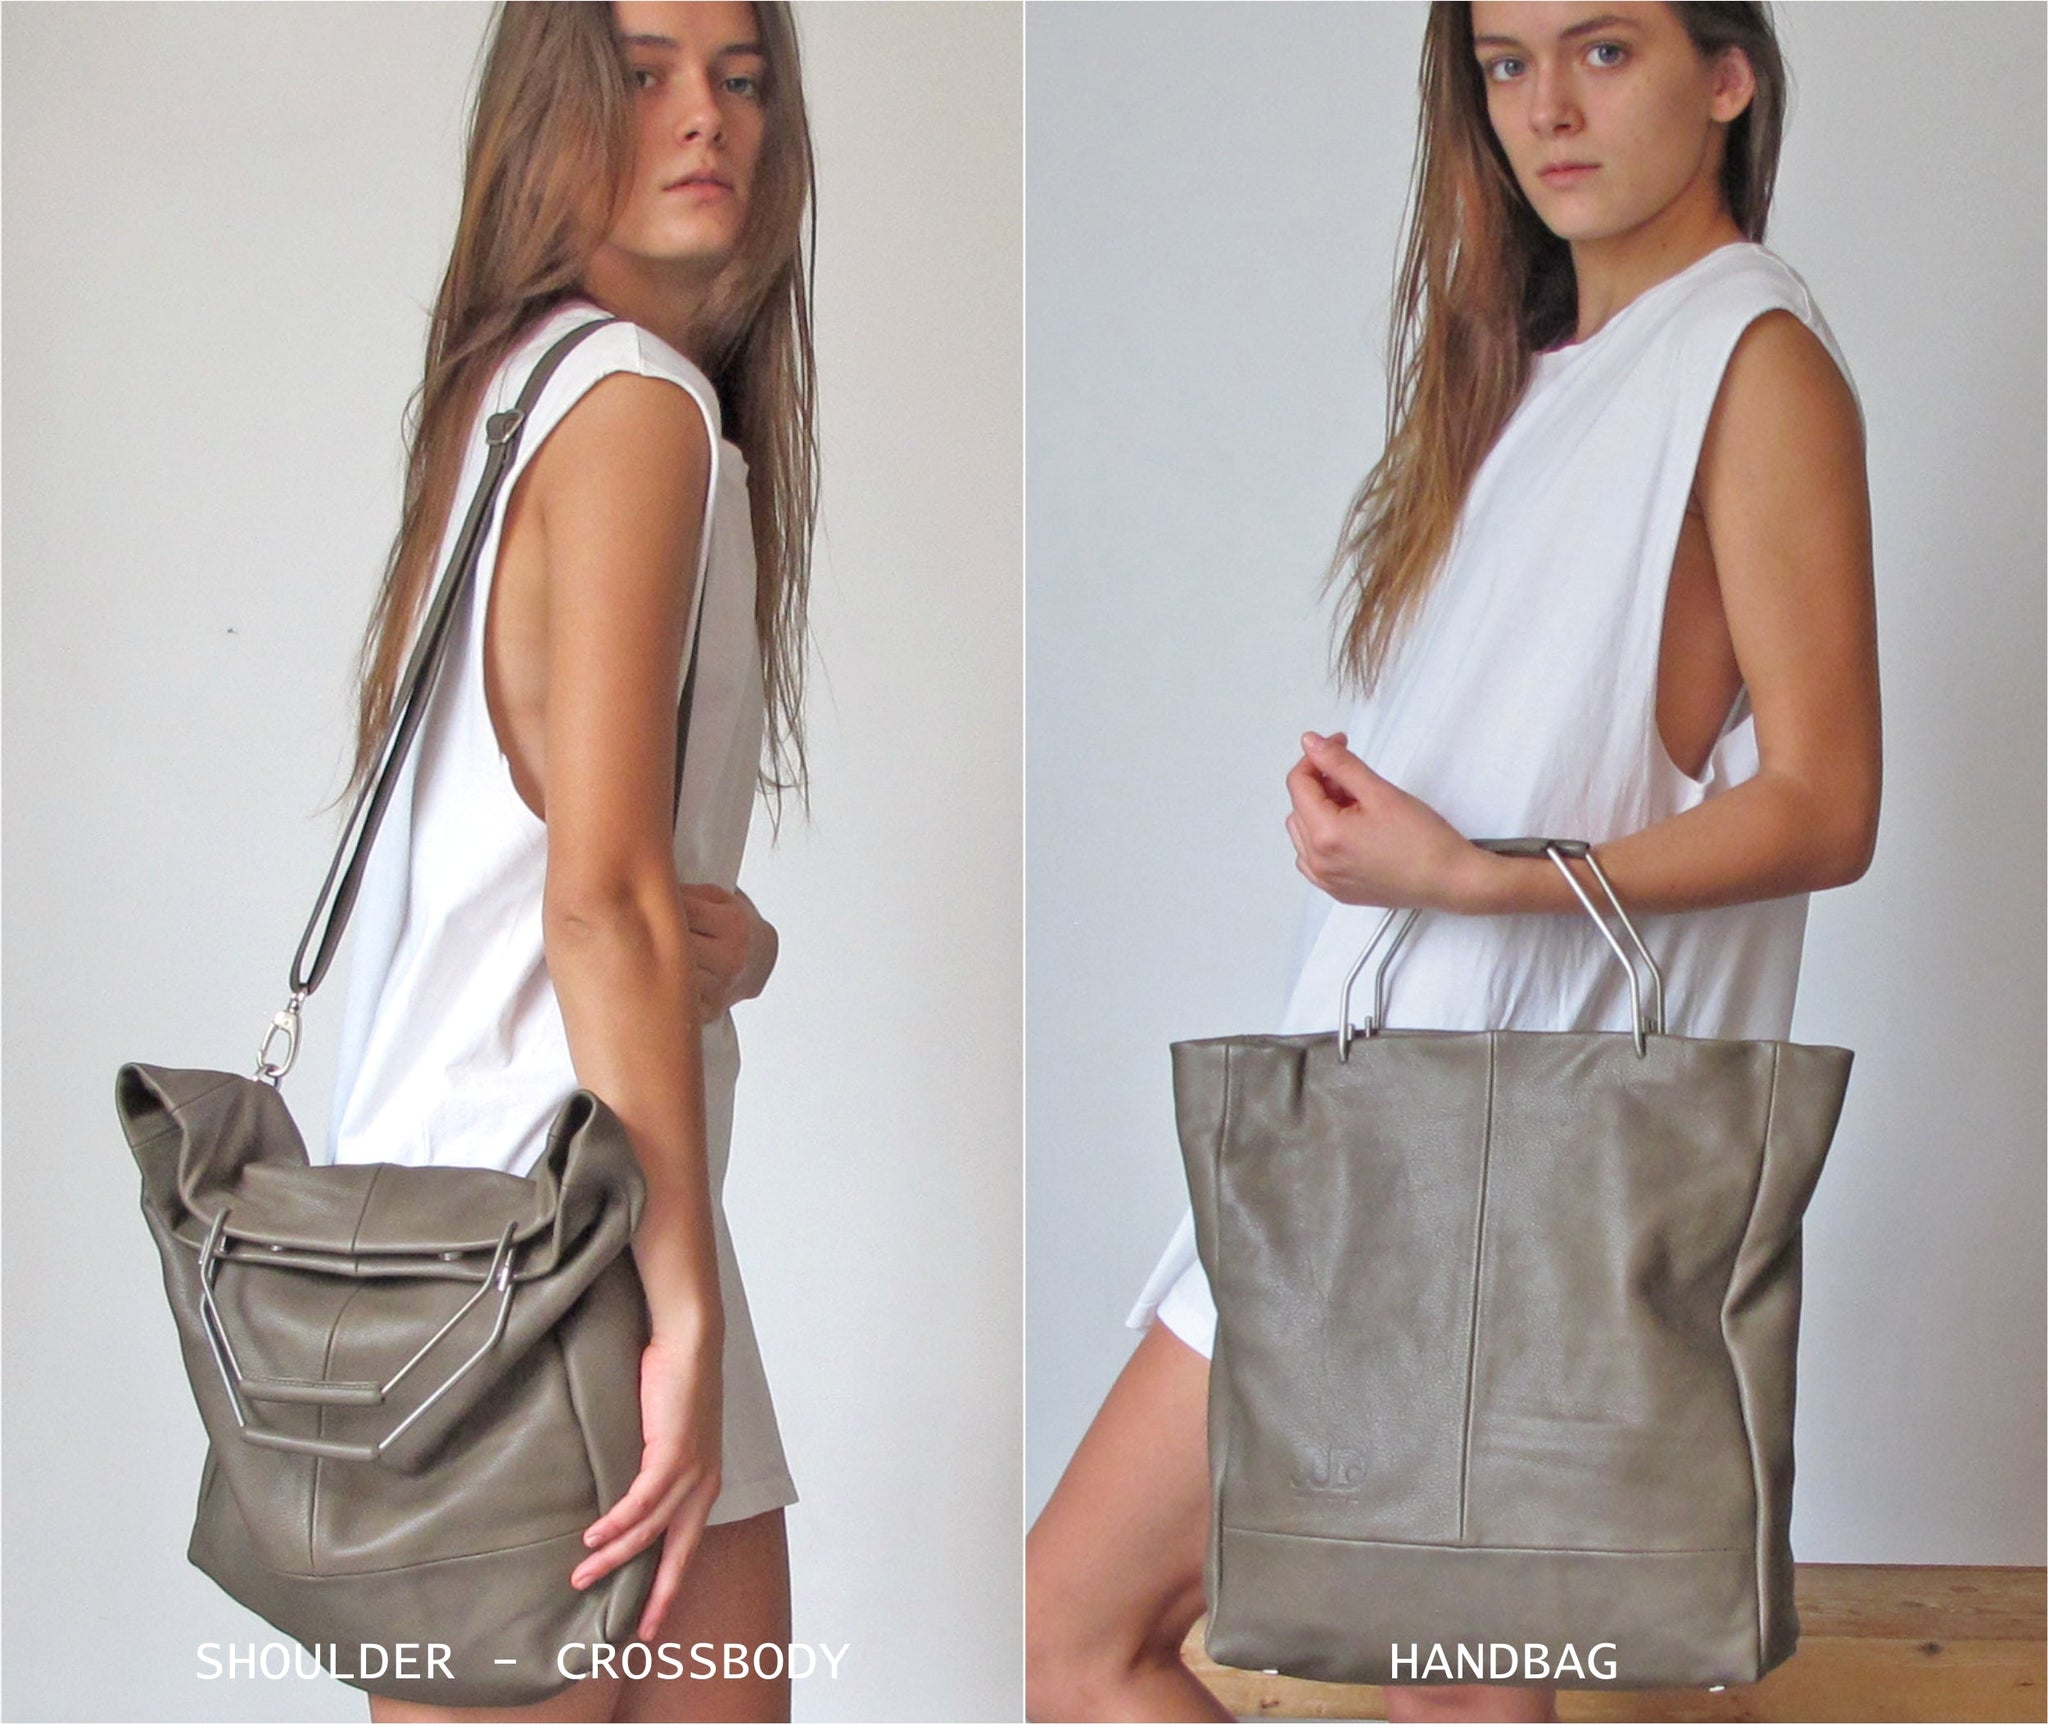 5in1 Convertible Leather Backpack, Handbag, Tote, Crossbody & Shoulder Bag  – judtlv